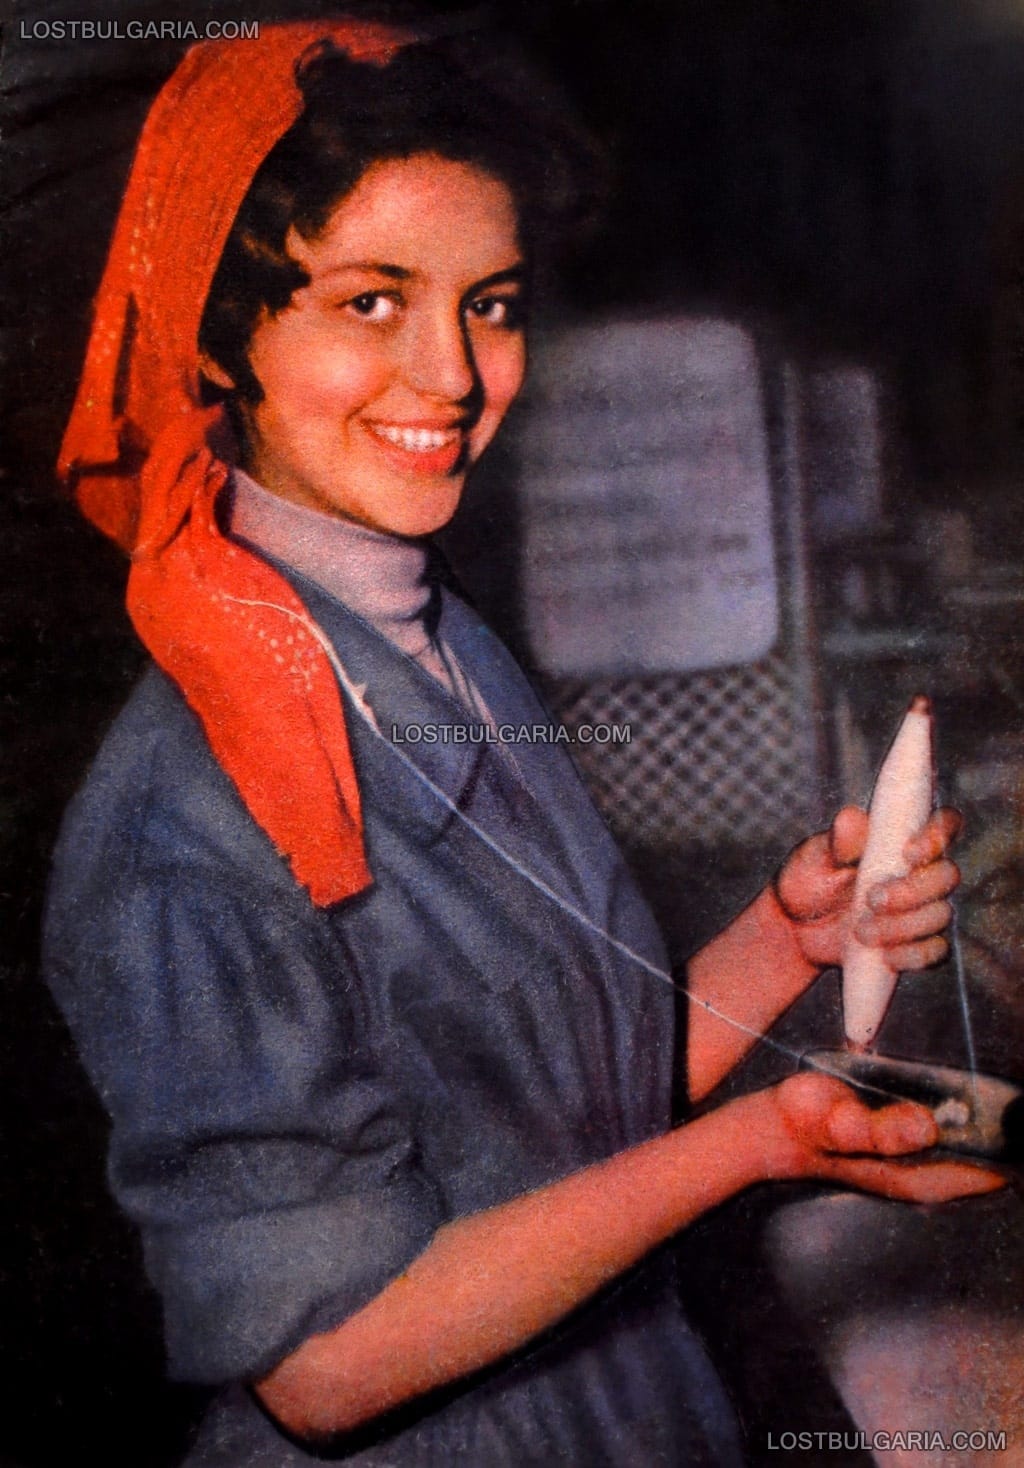 Портрет на ученичка от 26-то средно училище в София, работеща на тъкачен стан във фабрика "Текстилна слава", 1959 г.